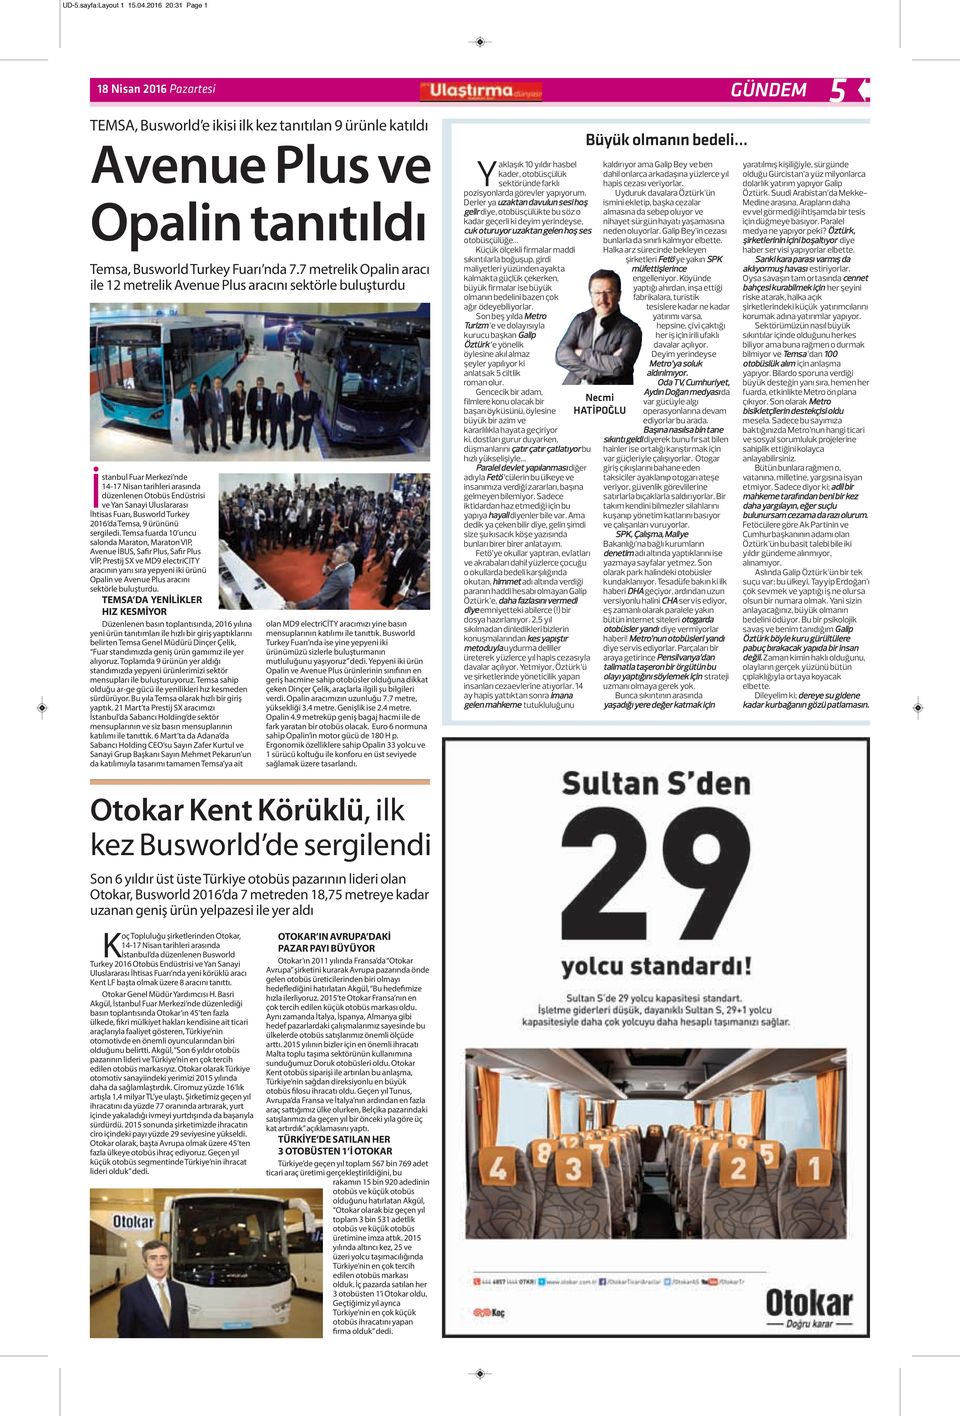 7 metrelik Opalin aracı ile 12 metrelik Avenue Plus aracını sektörle buluşturdu İstanbul Fuar Merkezi nde 14-17 Nisan tarihleri arasında düzenlenen Otobüs Endüstrisi ve Yan Sanayi Uluslararası